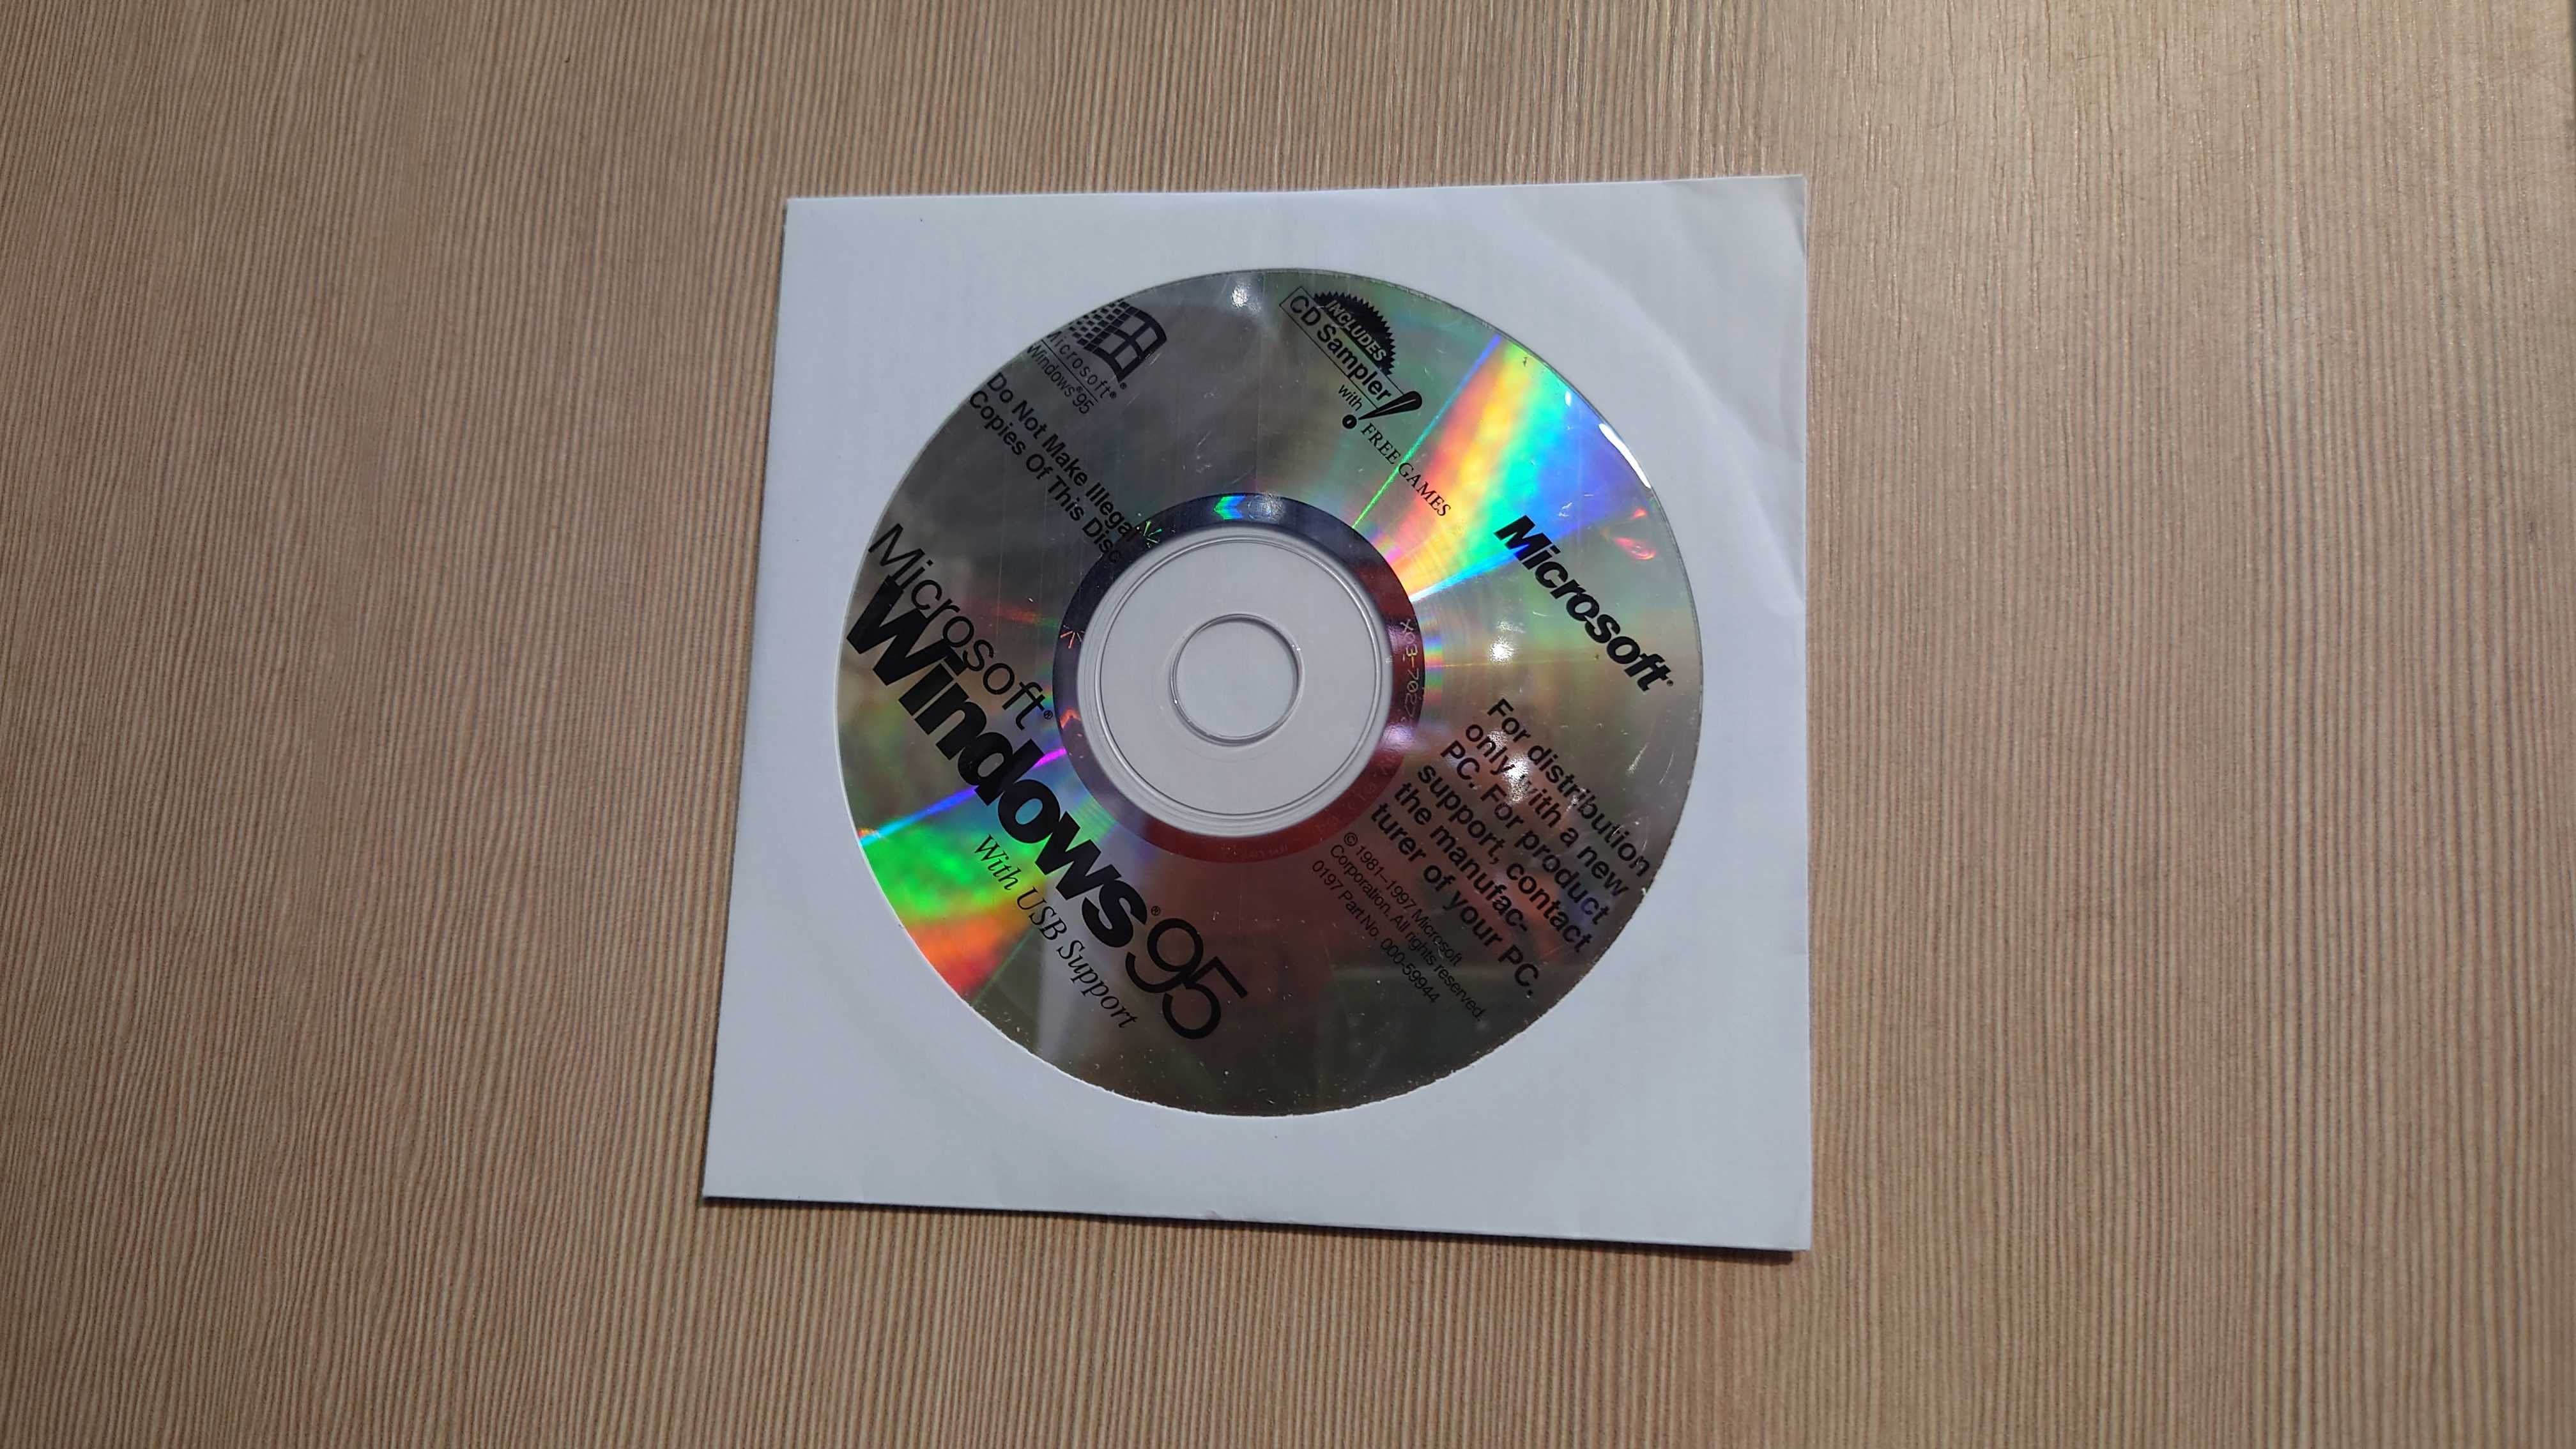 Windows 95 klucz + płyta CD + wprowadzenie #36